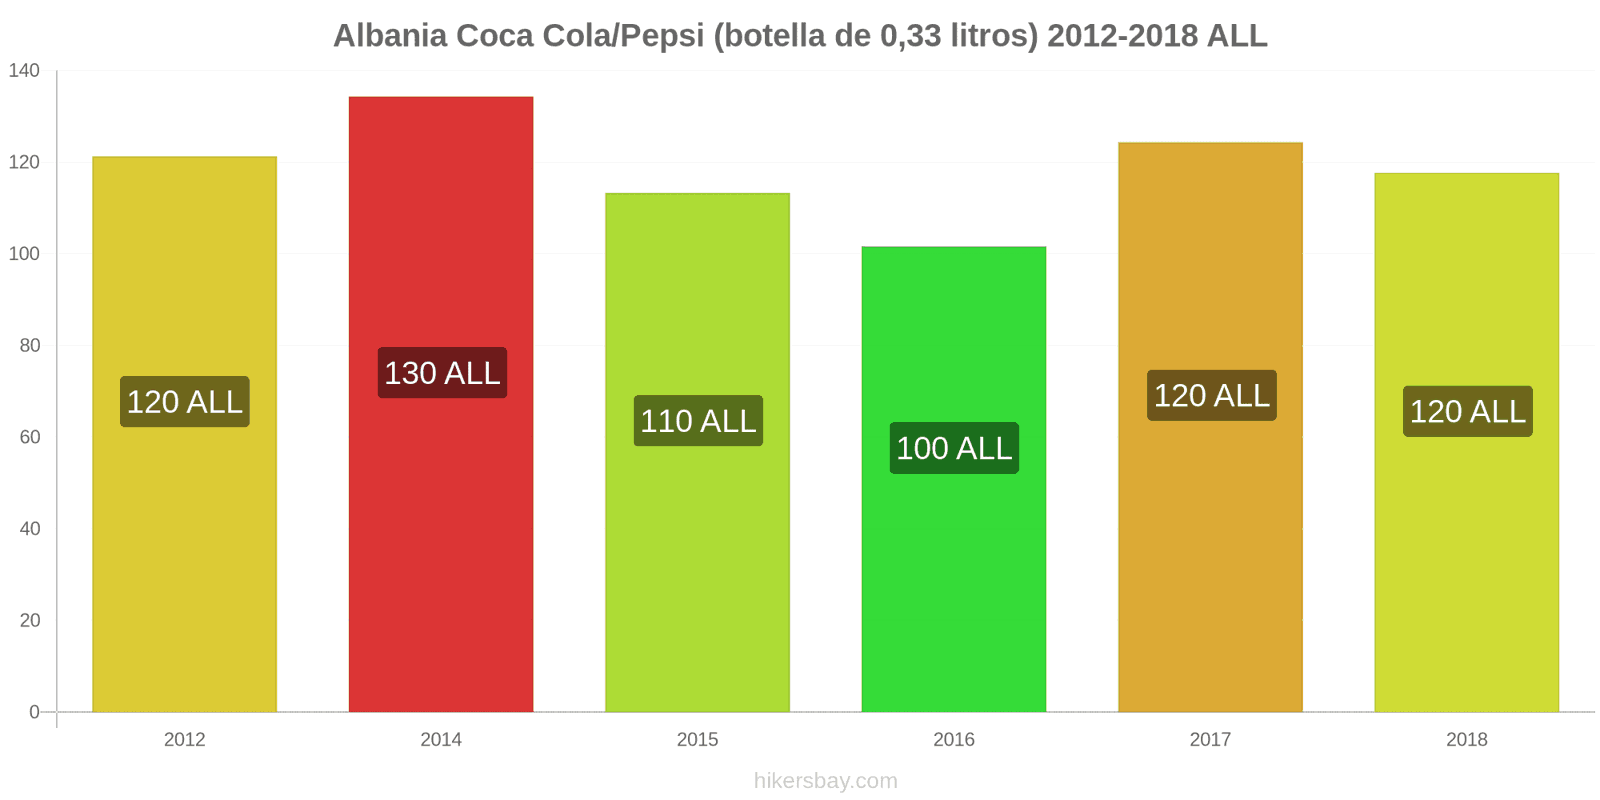 Albania cambios de precios Coca-Cola/Pepsi (botella de 0.33 litros) hikersbay.com